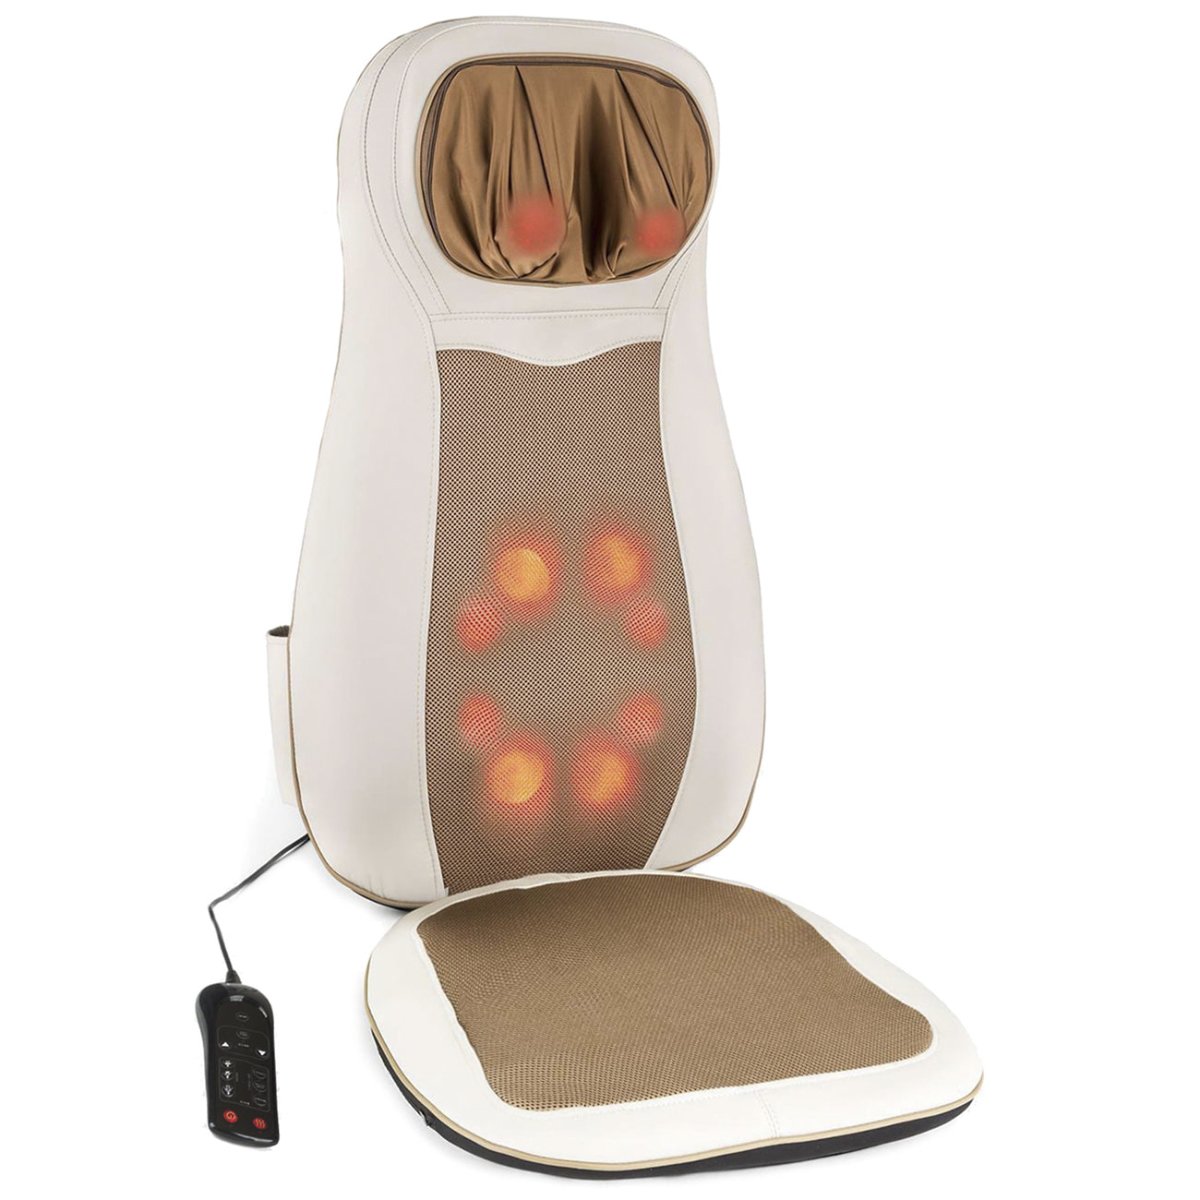 Respaldo Sillon Relax reclinable - Masajeador Espalda electrico - Masaje Shiatsu de Espalda y cervicales - Tapping - movilcom.com